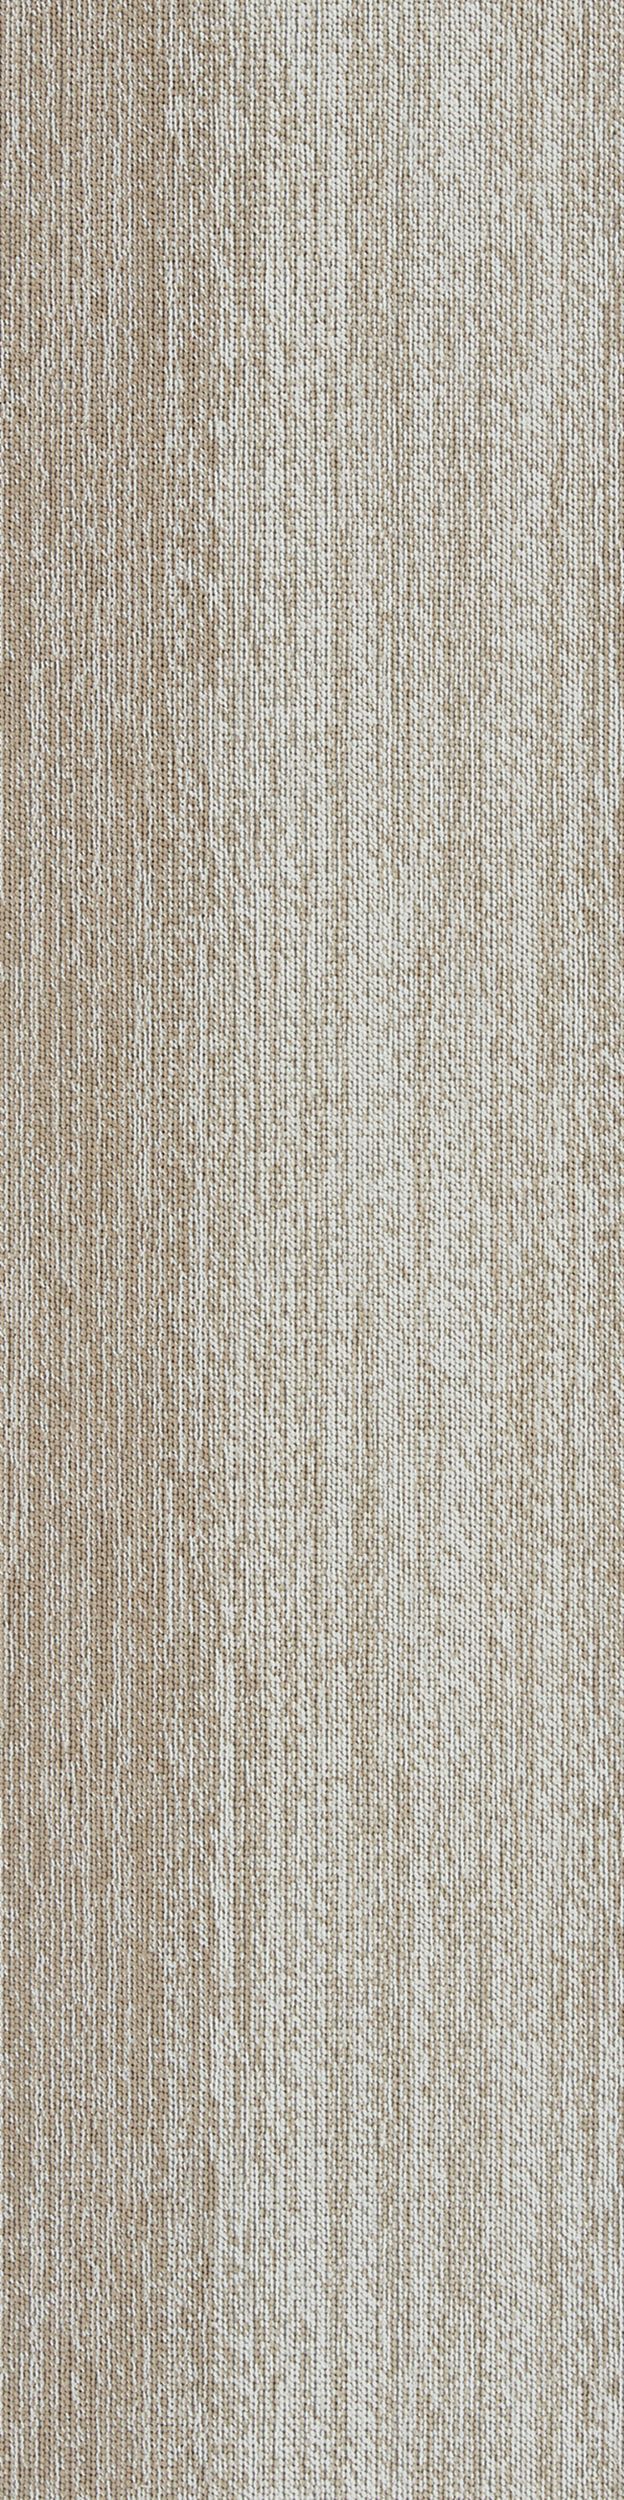 Touch Of Timber Carpet Tile In Oak afbeeldingnummer 3